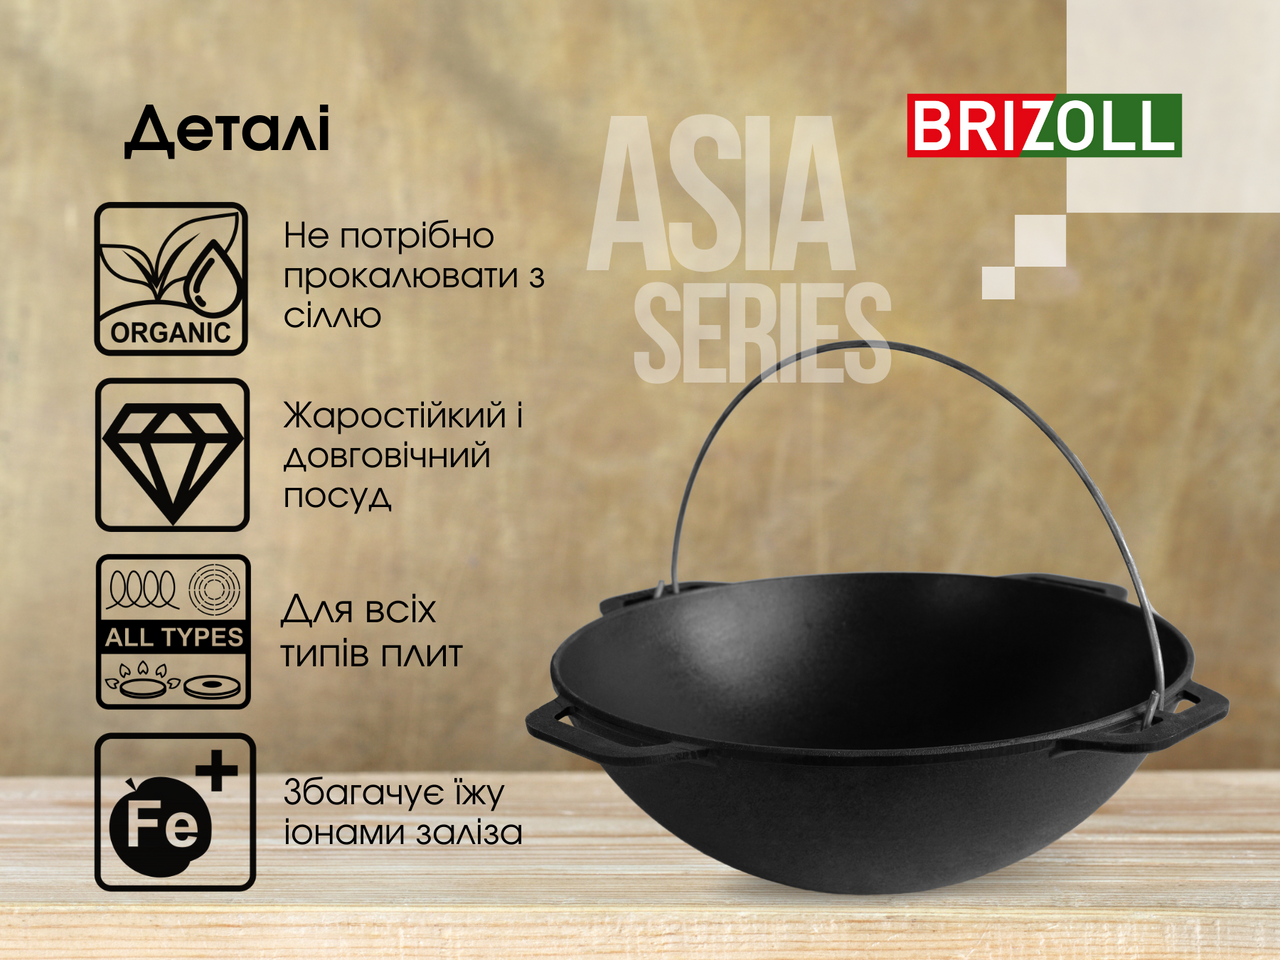 Cast iron asian cauldron 6 L with a bag